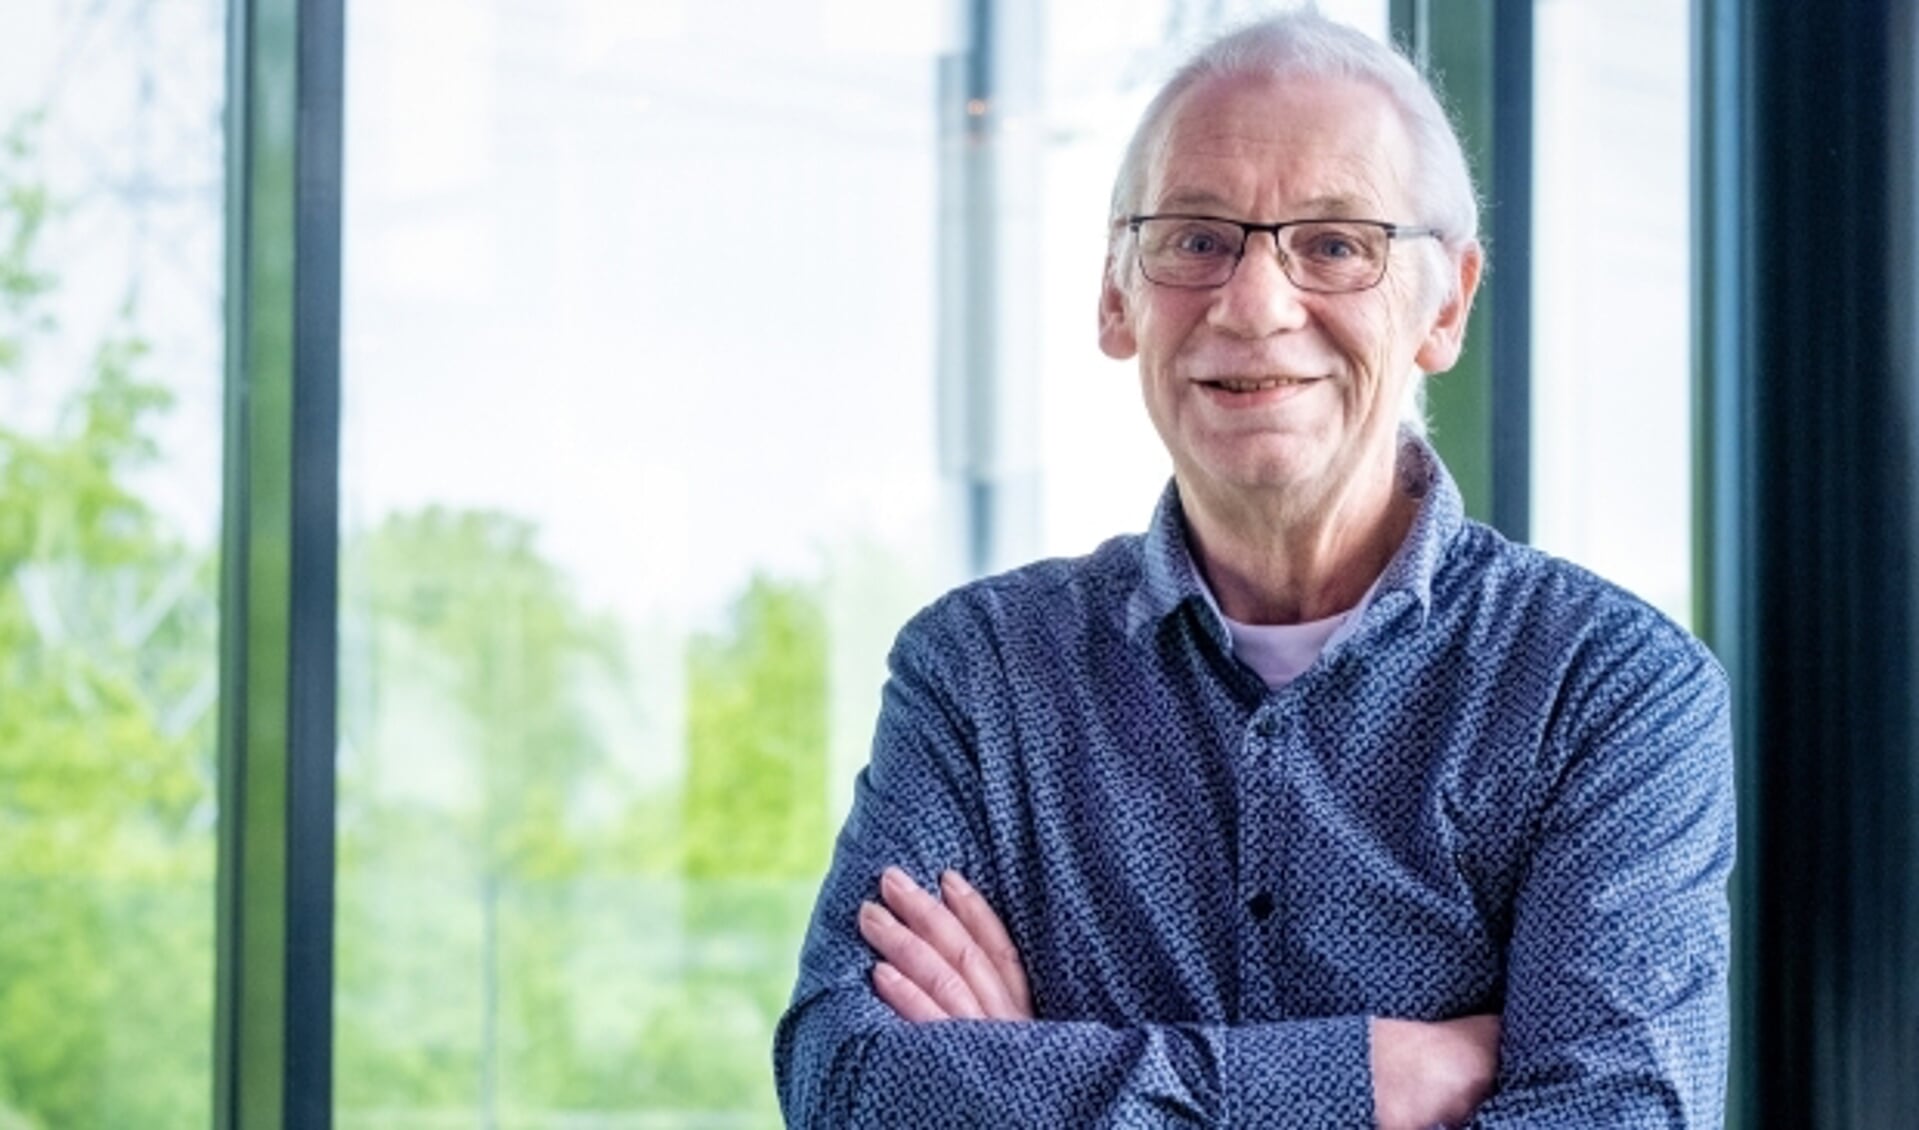 Bertus van der Kolk ga na vijftig jaar te hebben gewerkt bij Van Merksteijn met pensioen. ''Ik heb altijd alle vrijheid gekregen bij Van Merksteijn.''